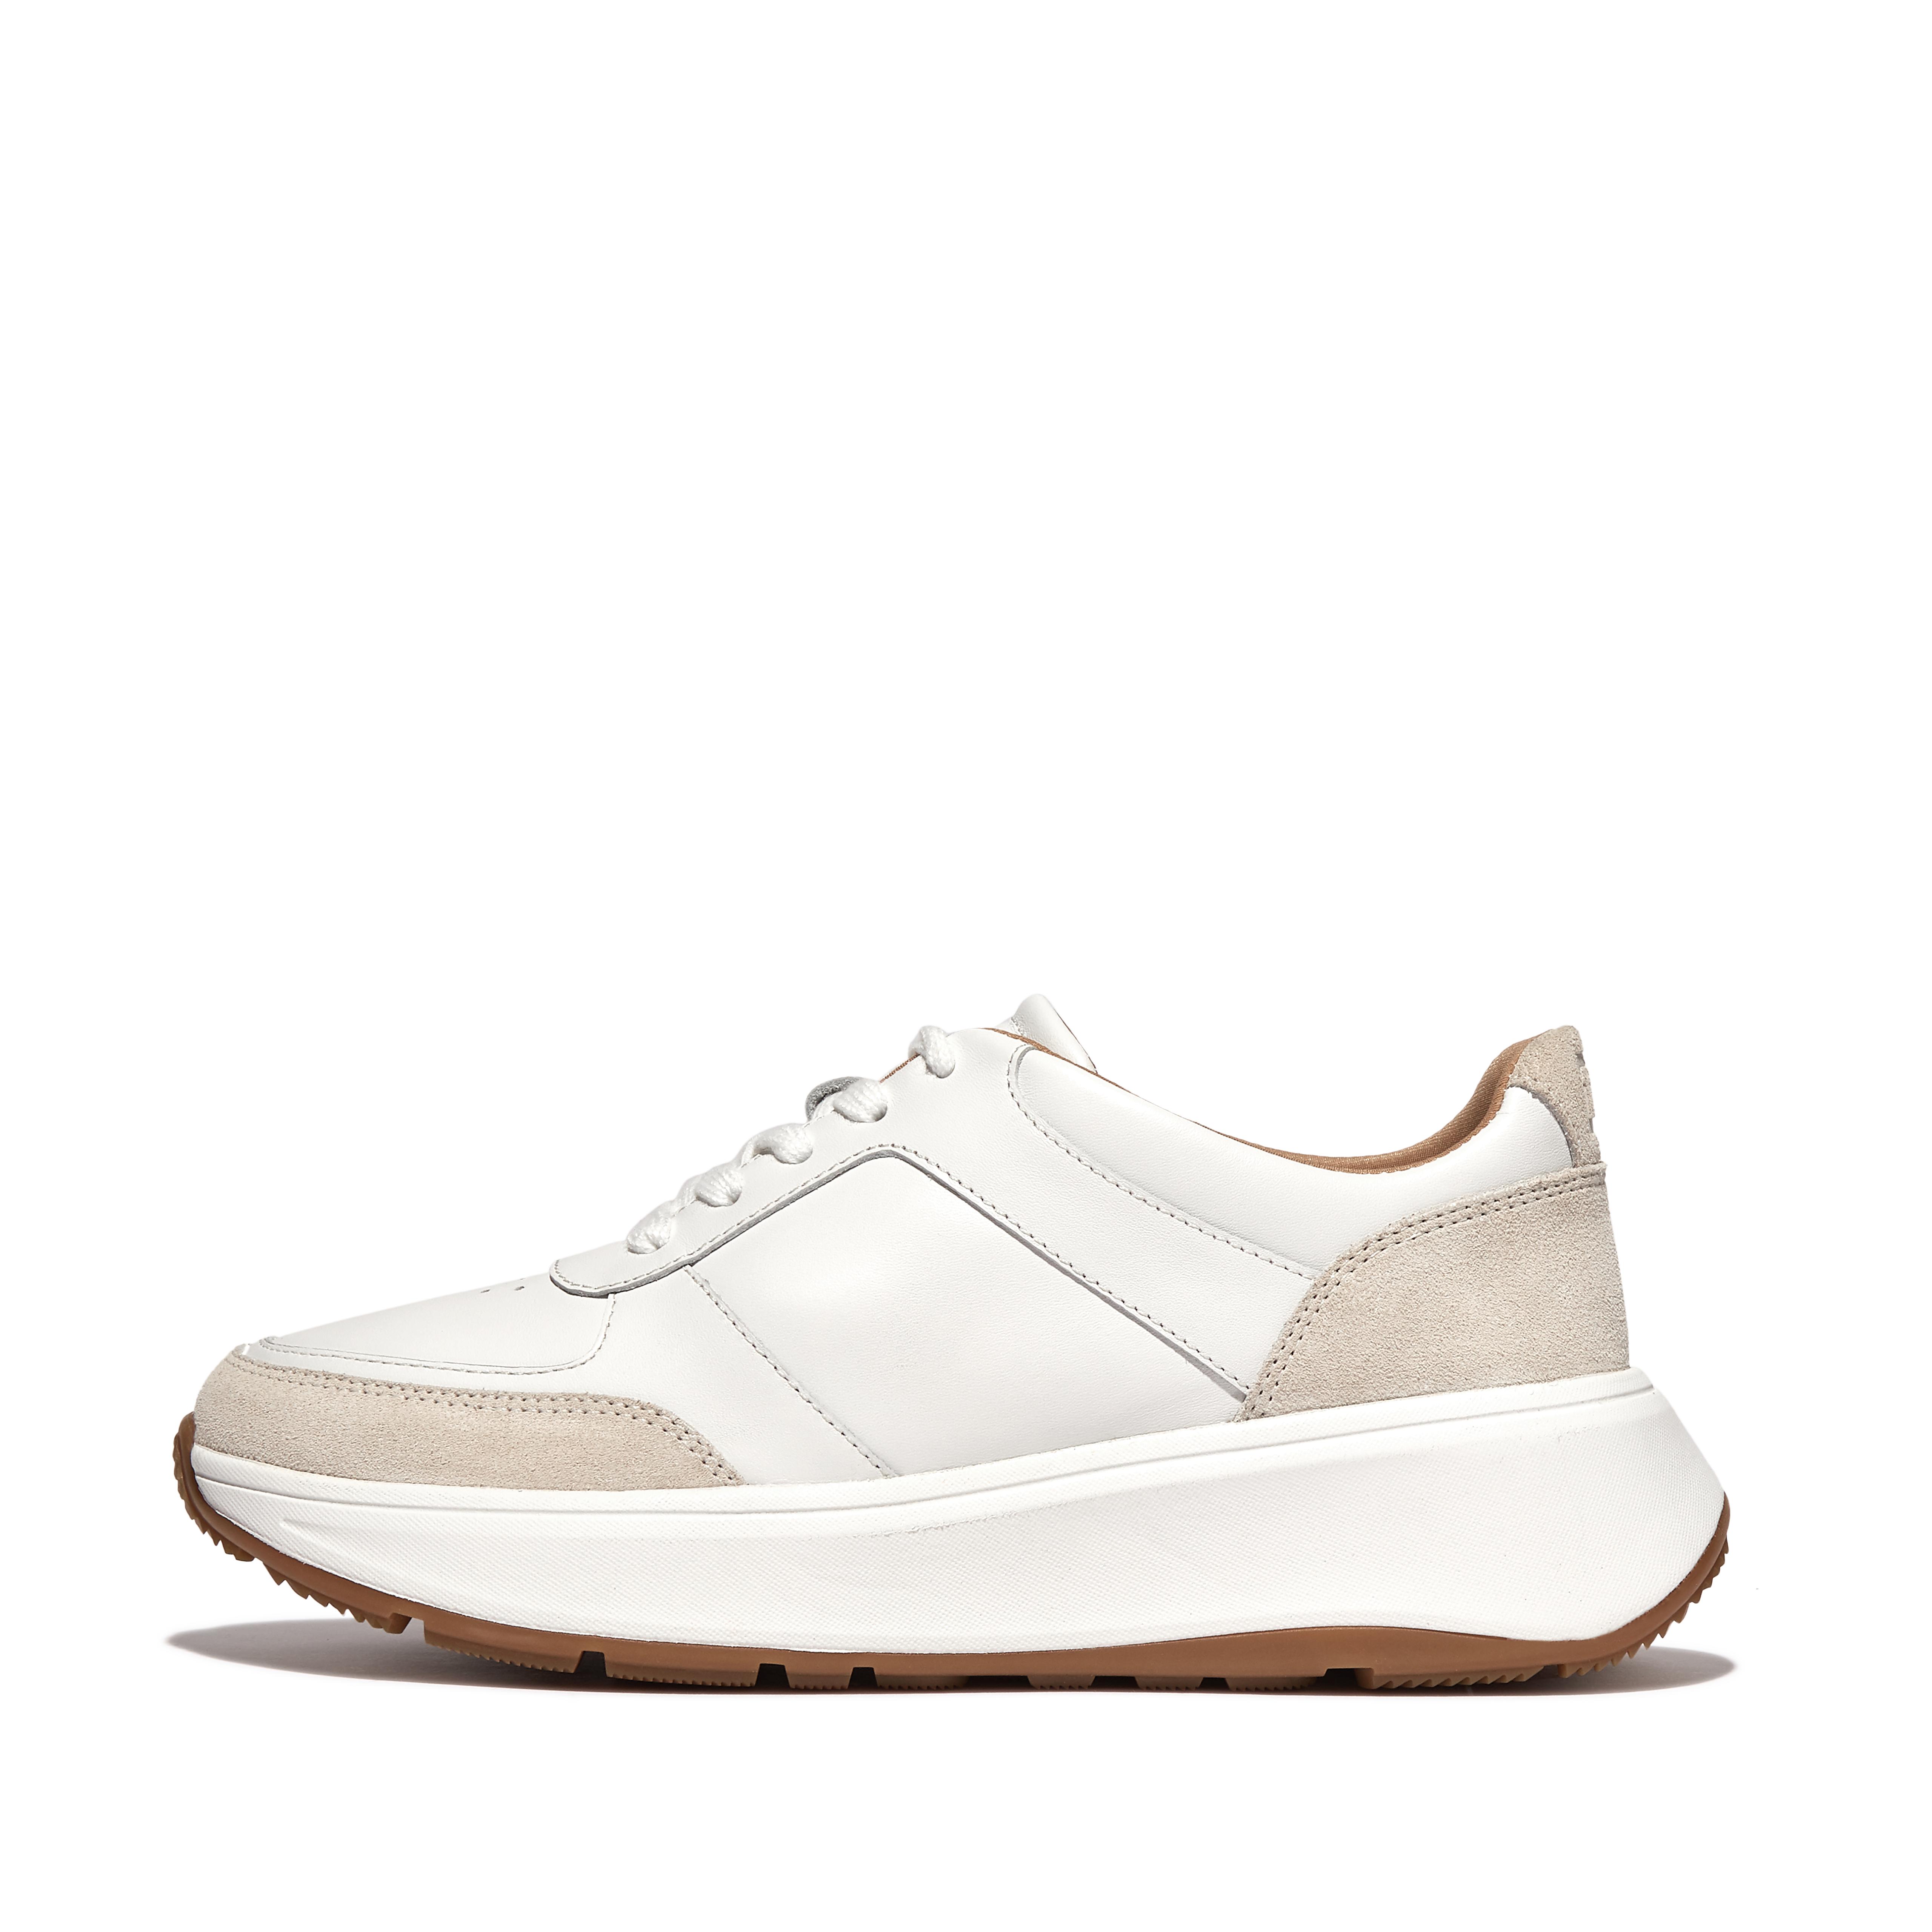 핏플랍 스니커즈 Fitflop Leather/Suede Flatform Sneakers,Urban White